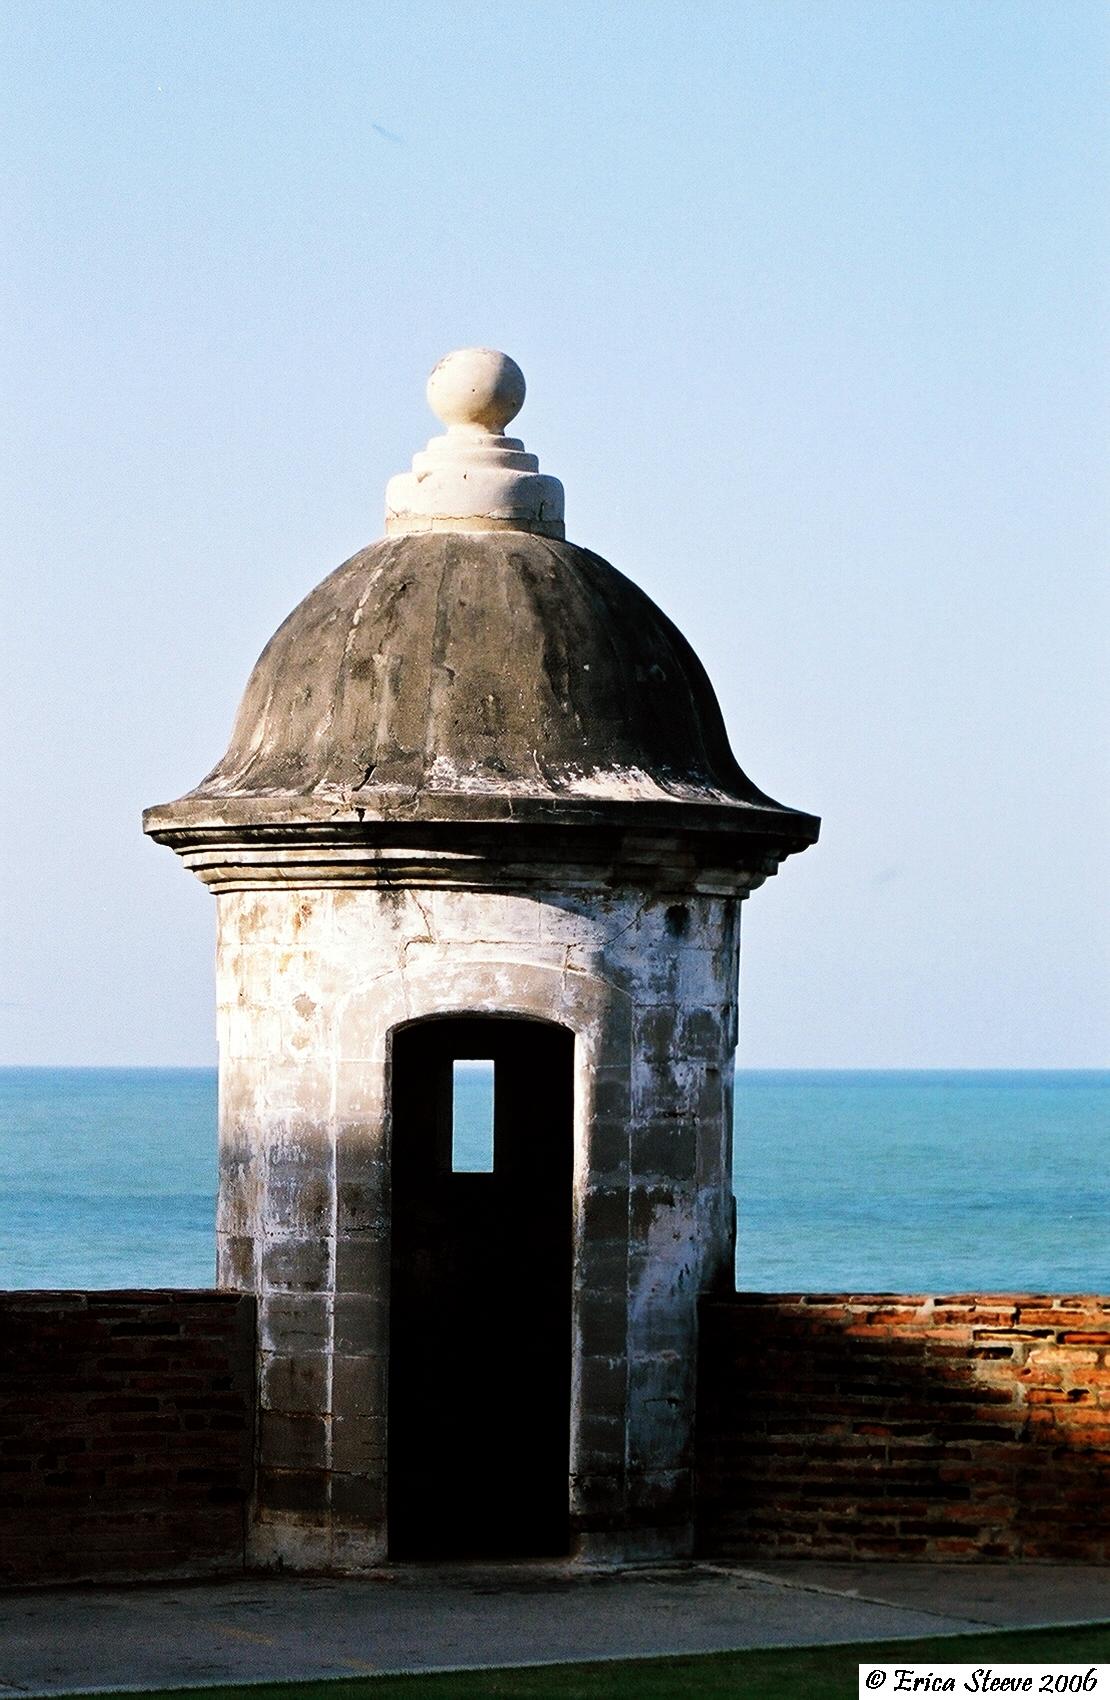 Sentry box outside of San Cristobal fort